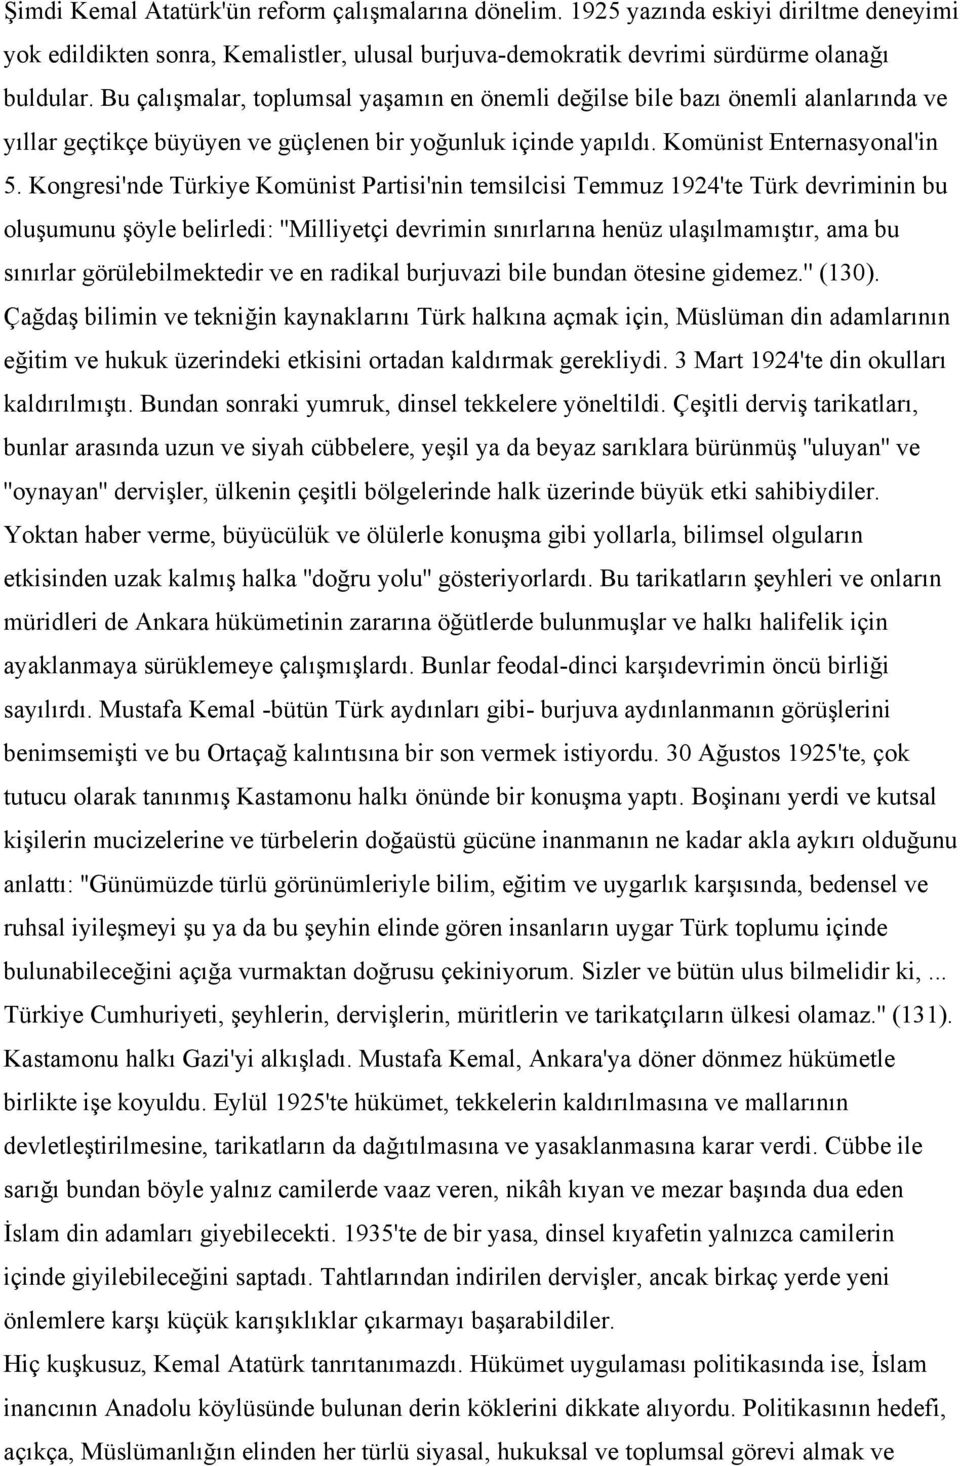 Kongresi'nde Türkiye Komünist Partisi'nin temsilcisi Temmuz 1924'te Türk devriminin bu oluşumunu şöyle belirledi: ''Milliyetçi devrimin sınırlarına henüz ulaşılmamıştır, ama bu sınırlar